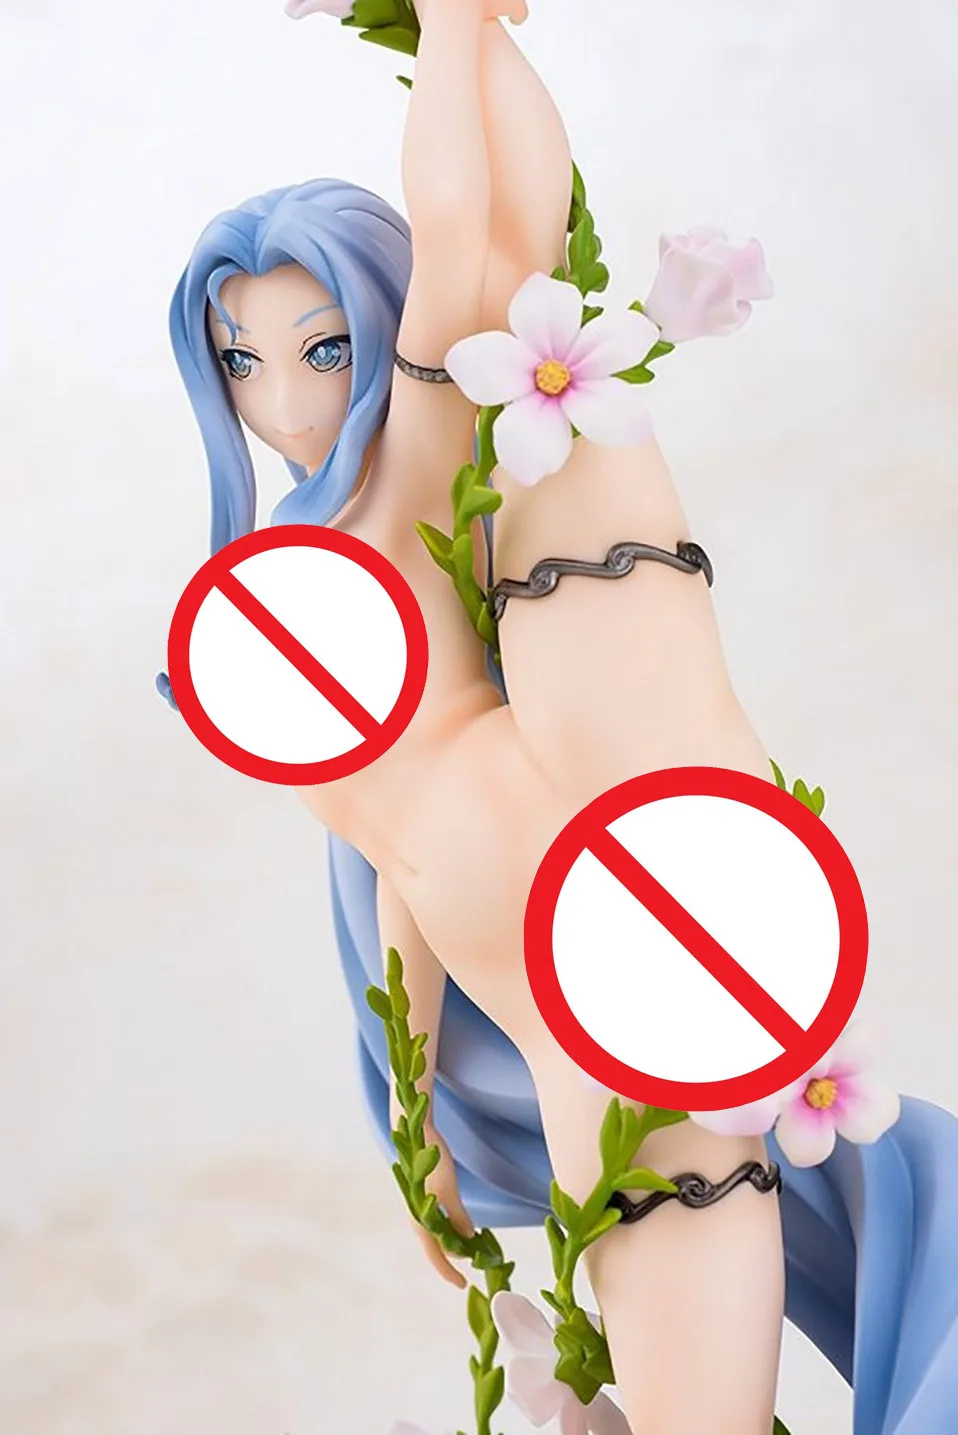 32 см японского аниме цветок Лепрекон Мария беллена ПВХ фигурка игрушки Аниме Сексуальная девушка Мария беллена Коллекционная модель игрушки